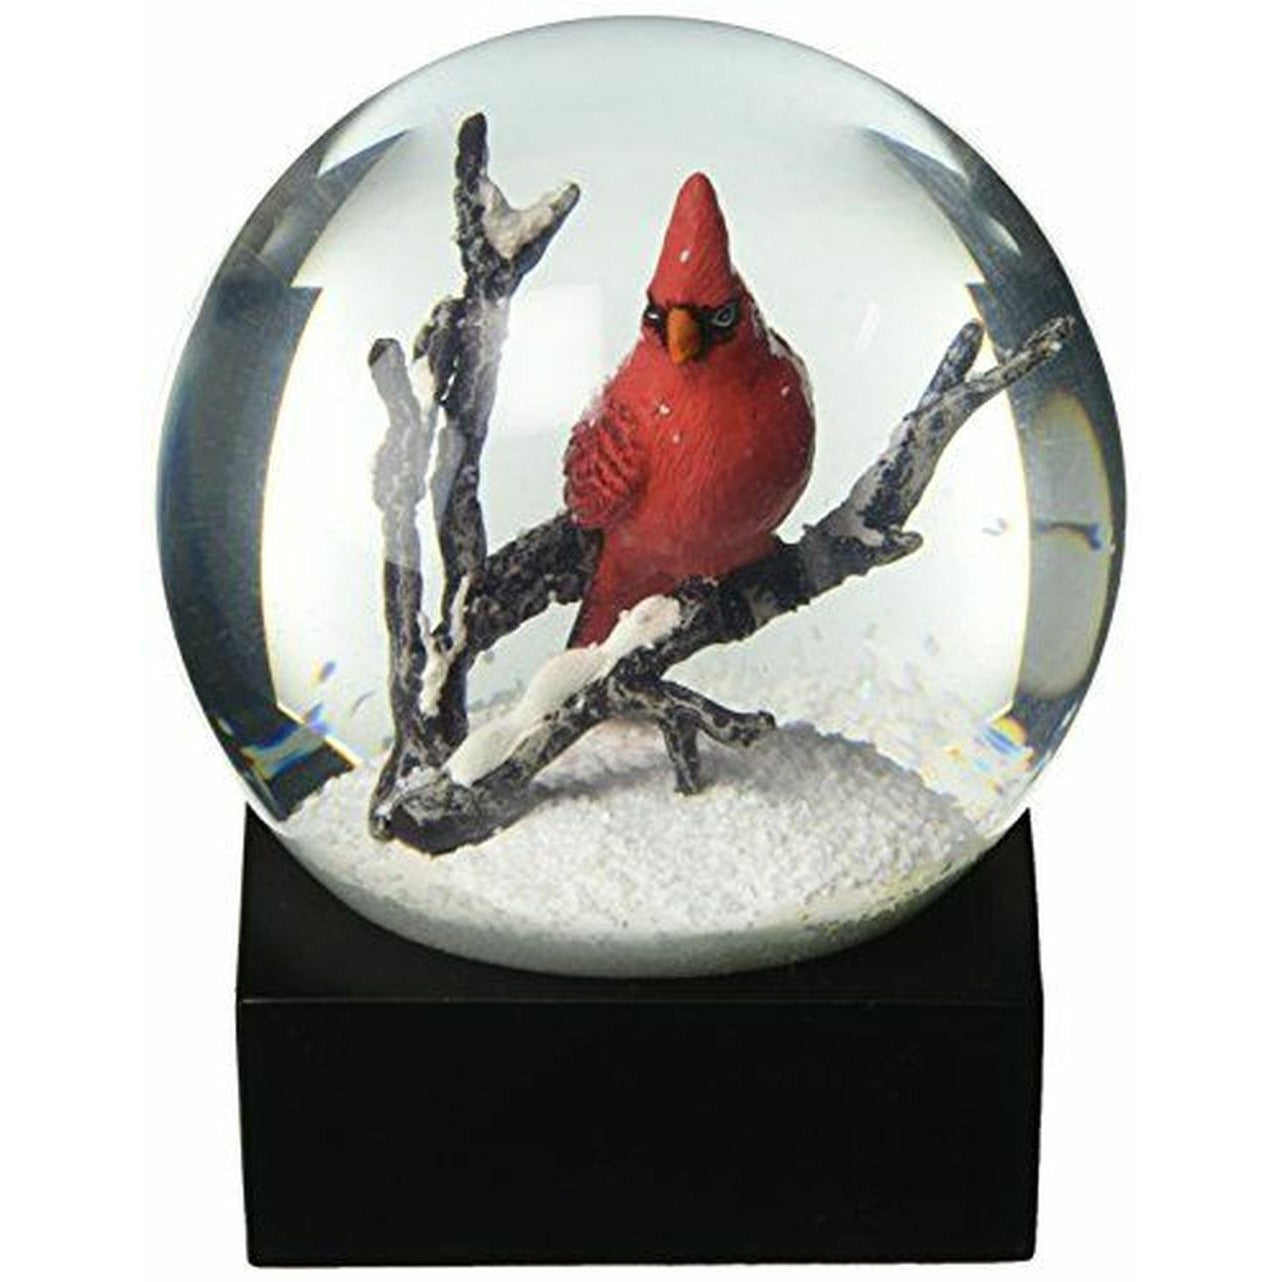 Cool Snow Globes Cardinal Singing